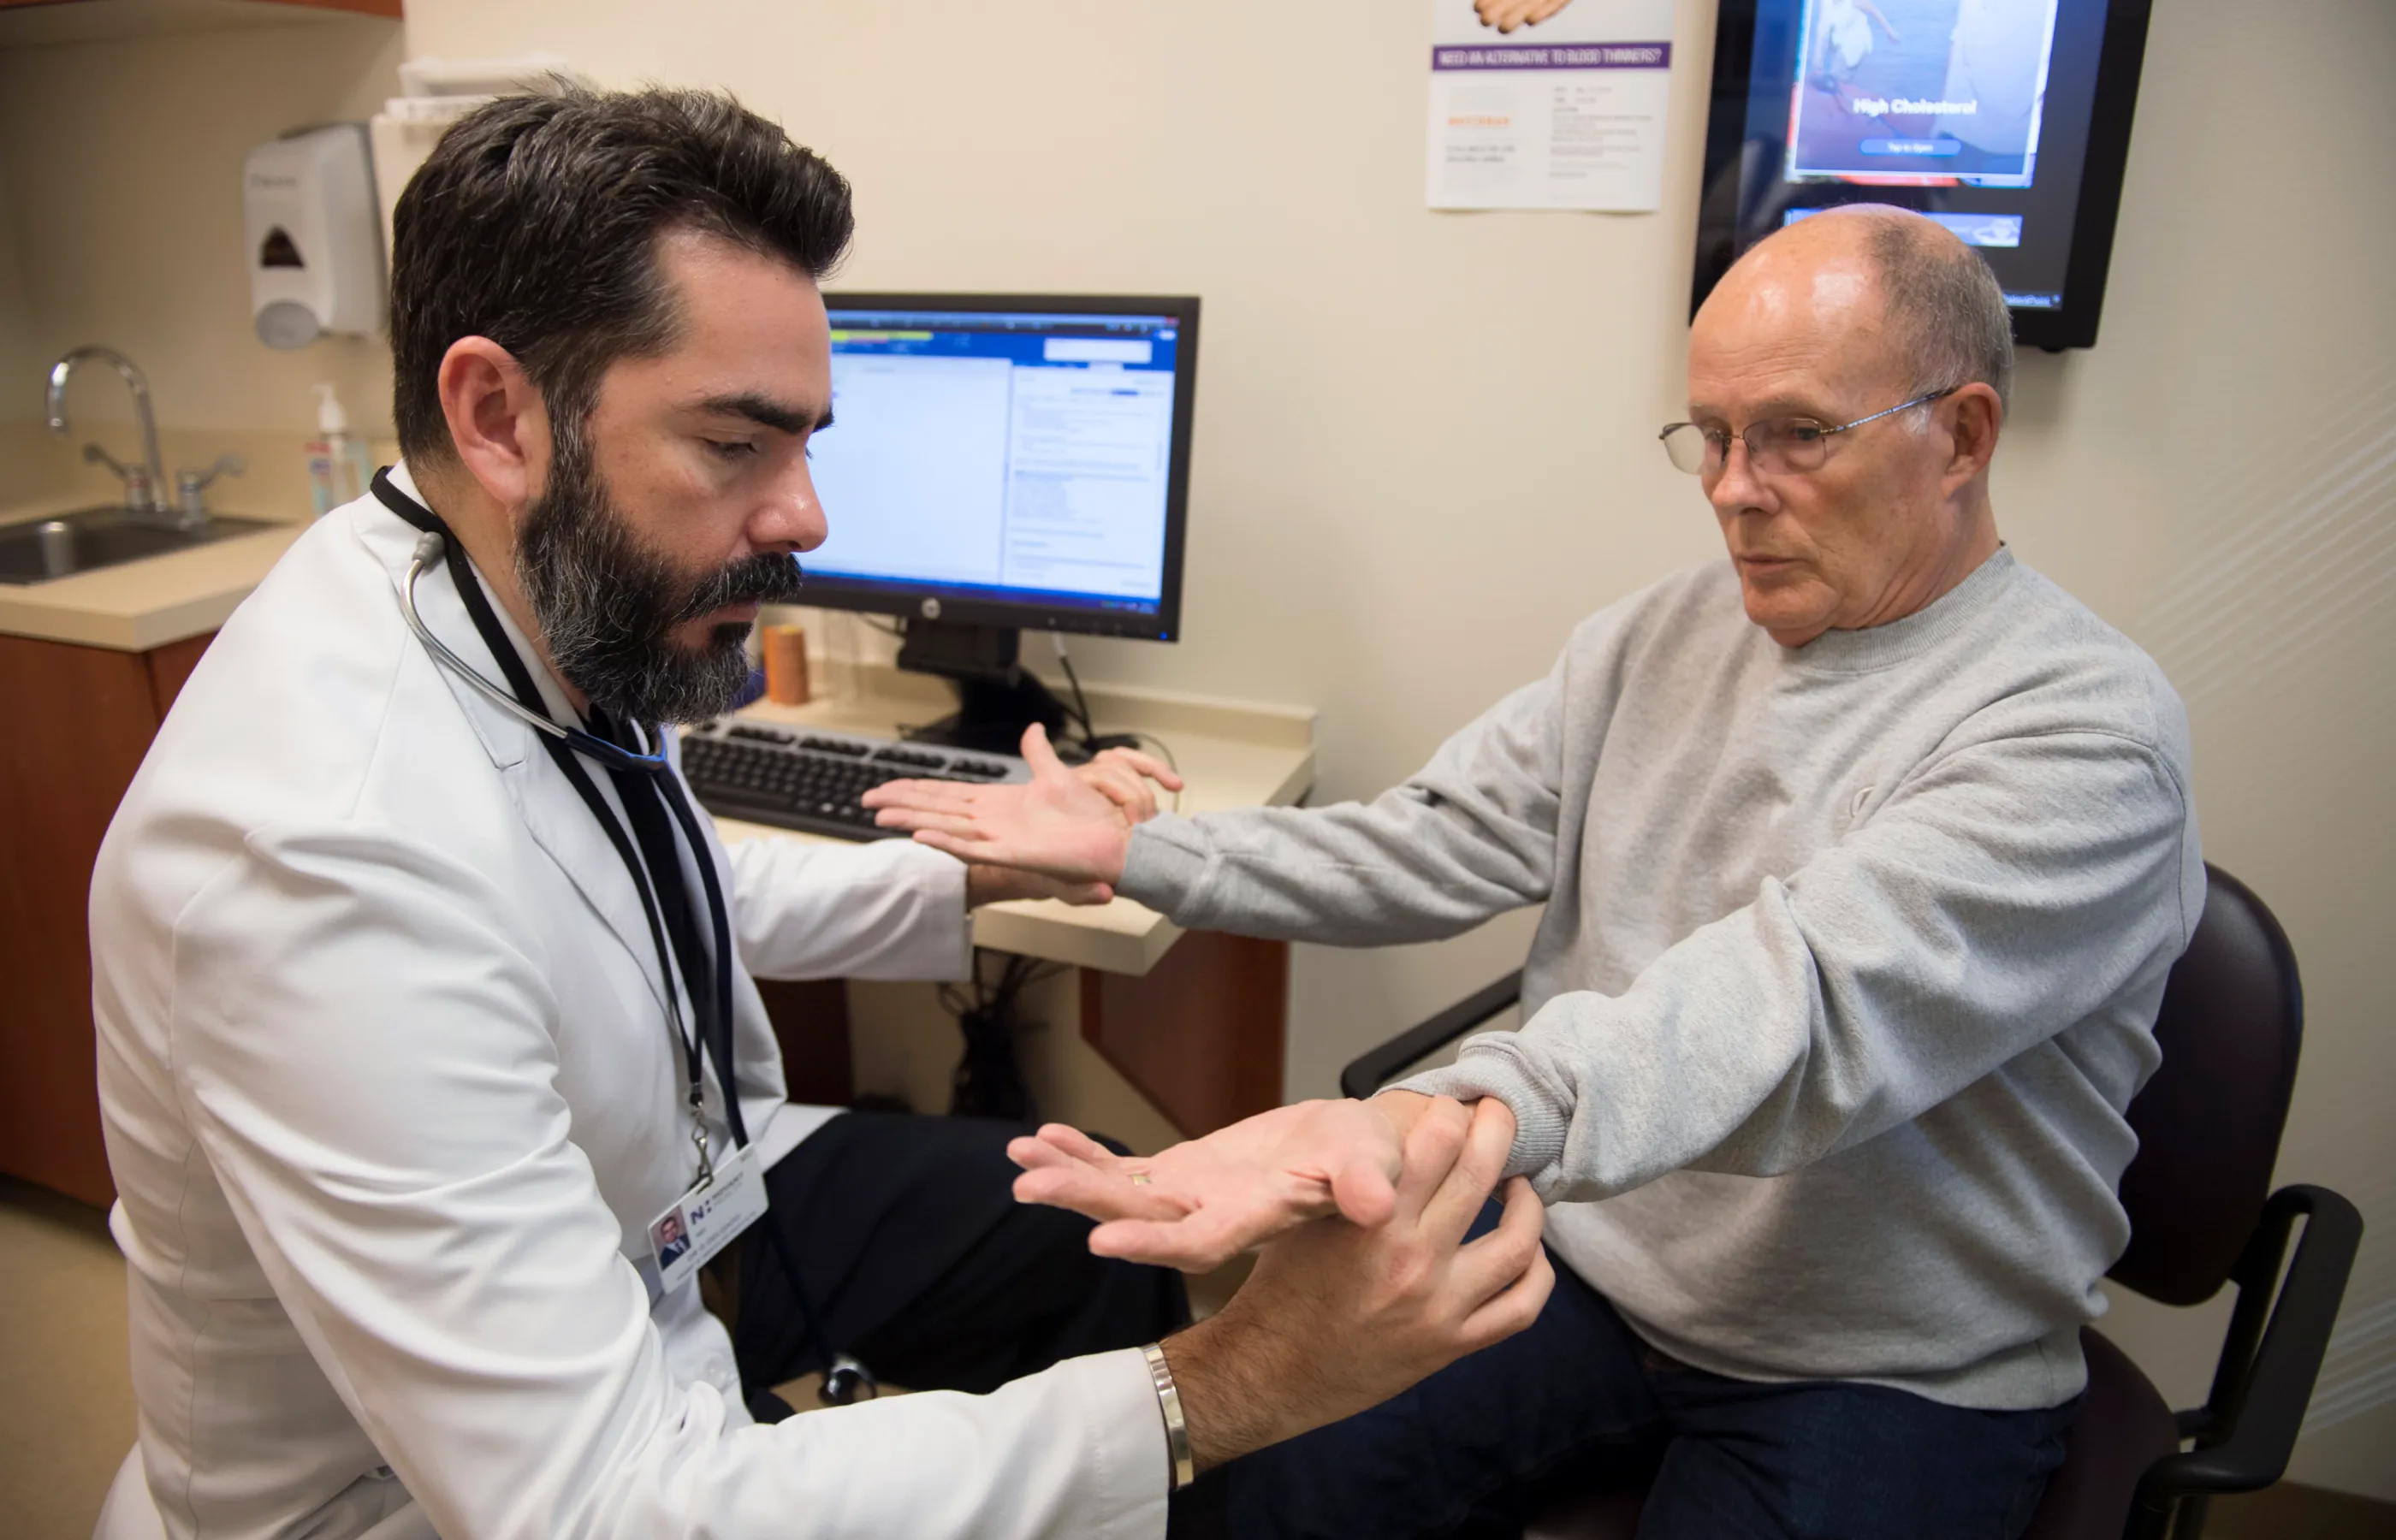 Novant Health's Dr. Delgado is examining a patient hands.